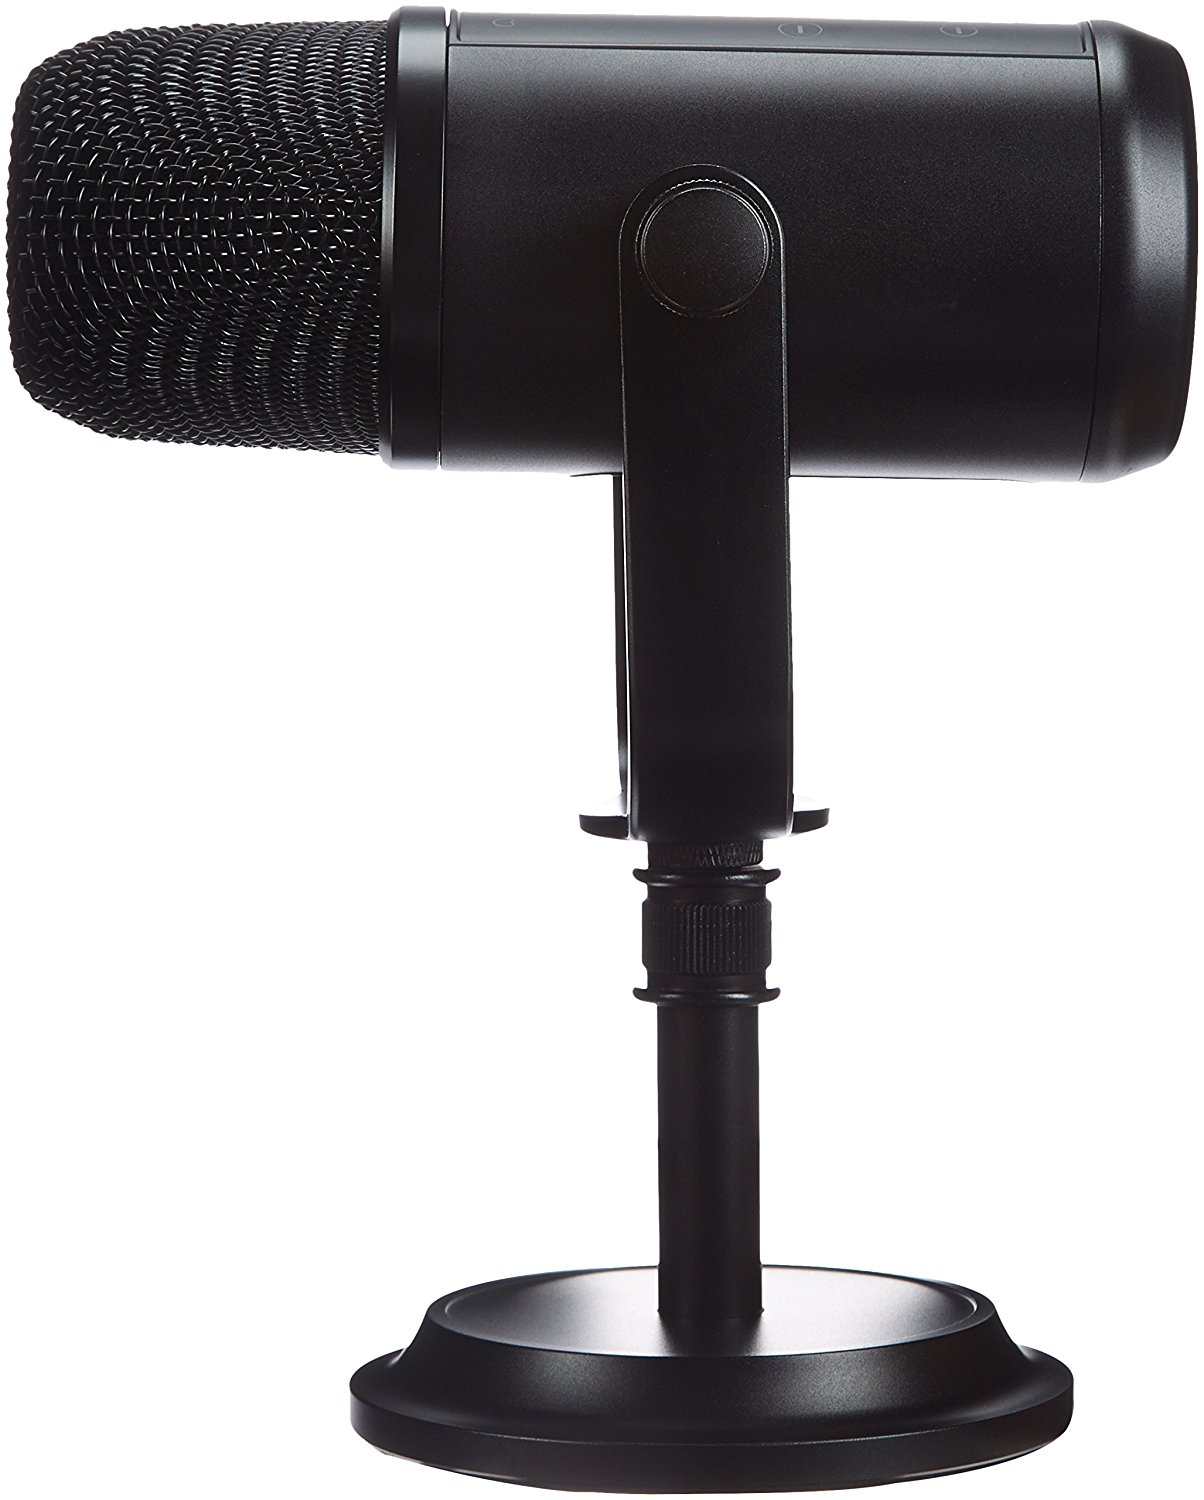 Micrófono de Condensador USB con Tarjeta de Sonido incorporada para Grabar Negro Hacer Streaming y retransmitir Videojuegos Marantz Professional MPM-1000U emitir pódcasts 